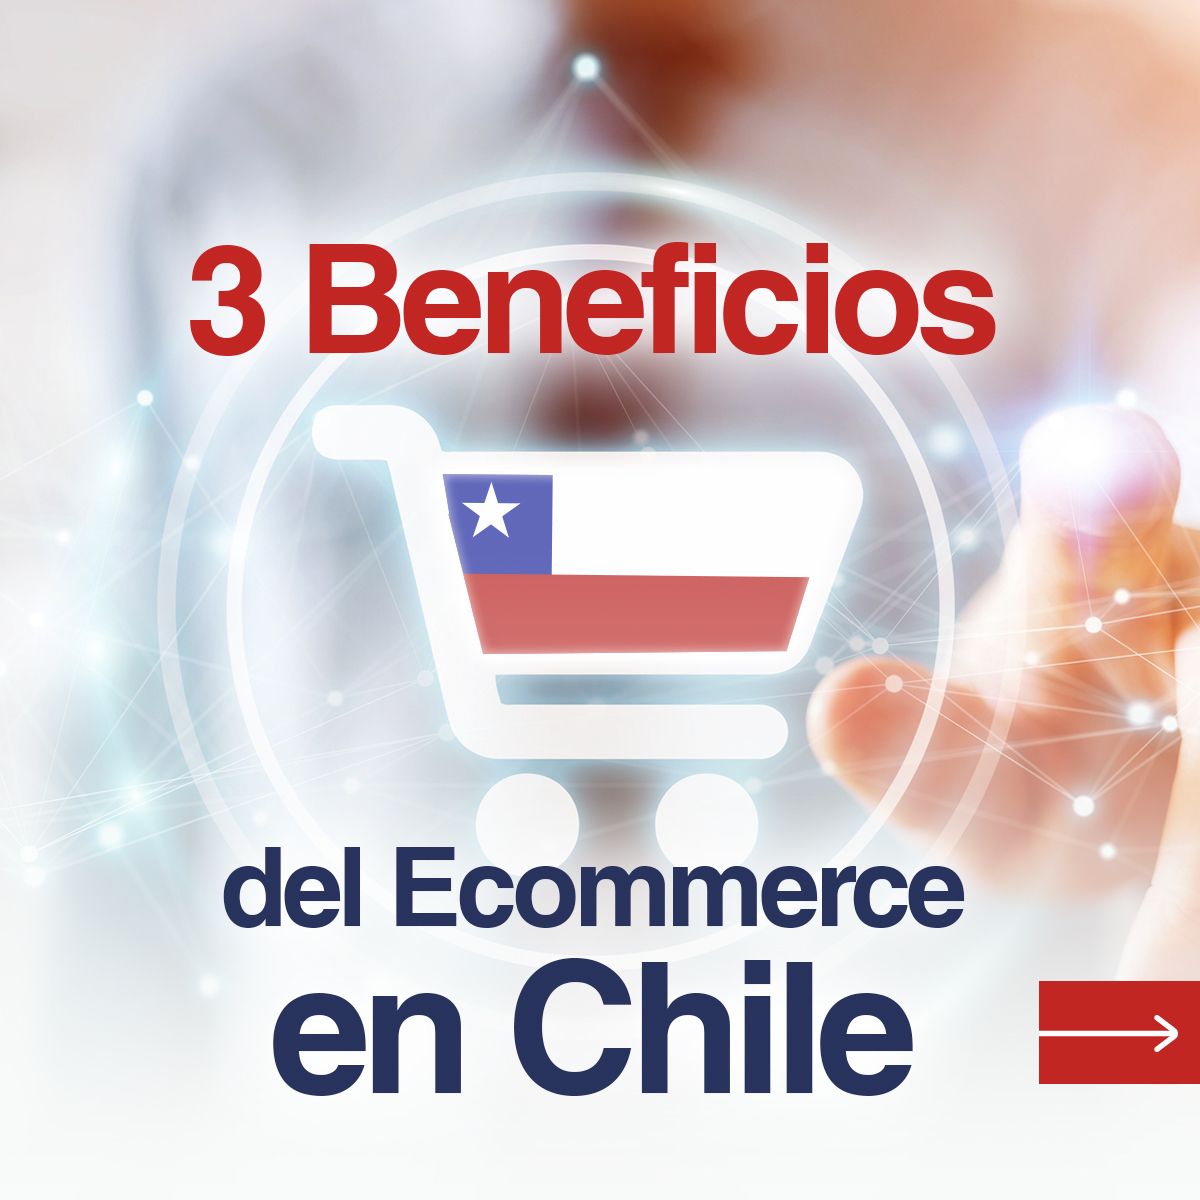 3 Beneficios del Ecommerce en Chile